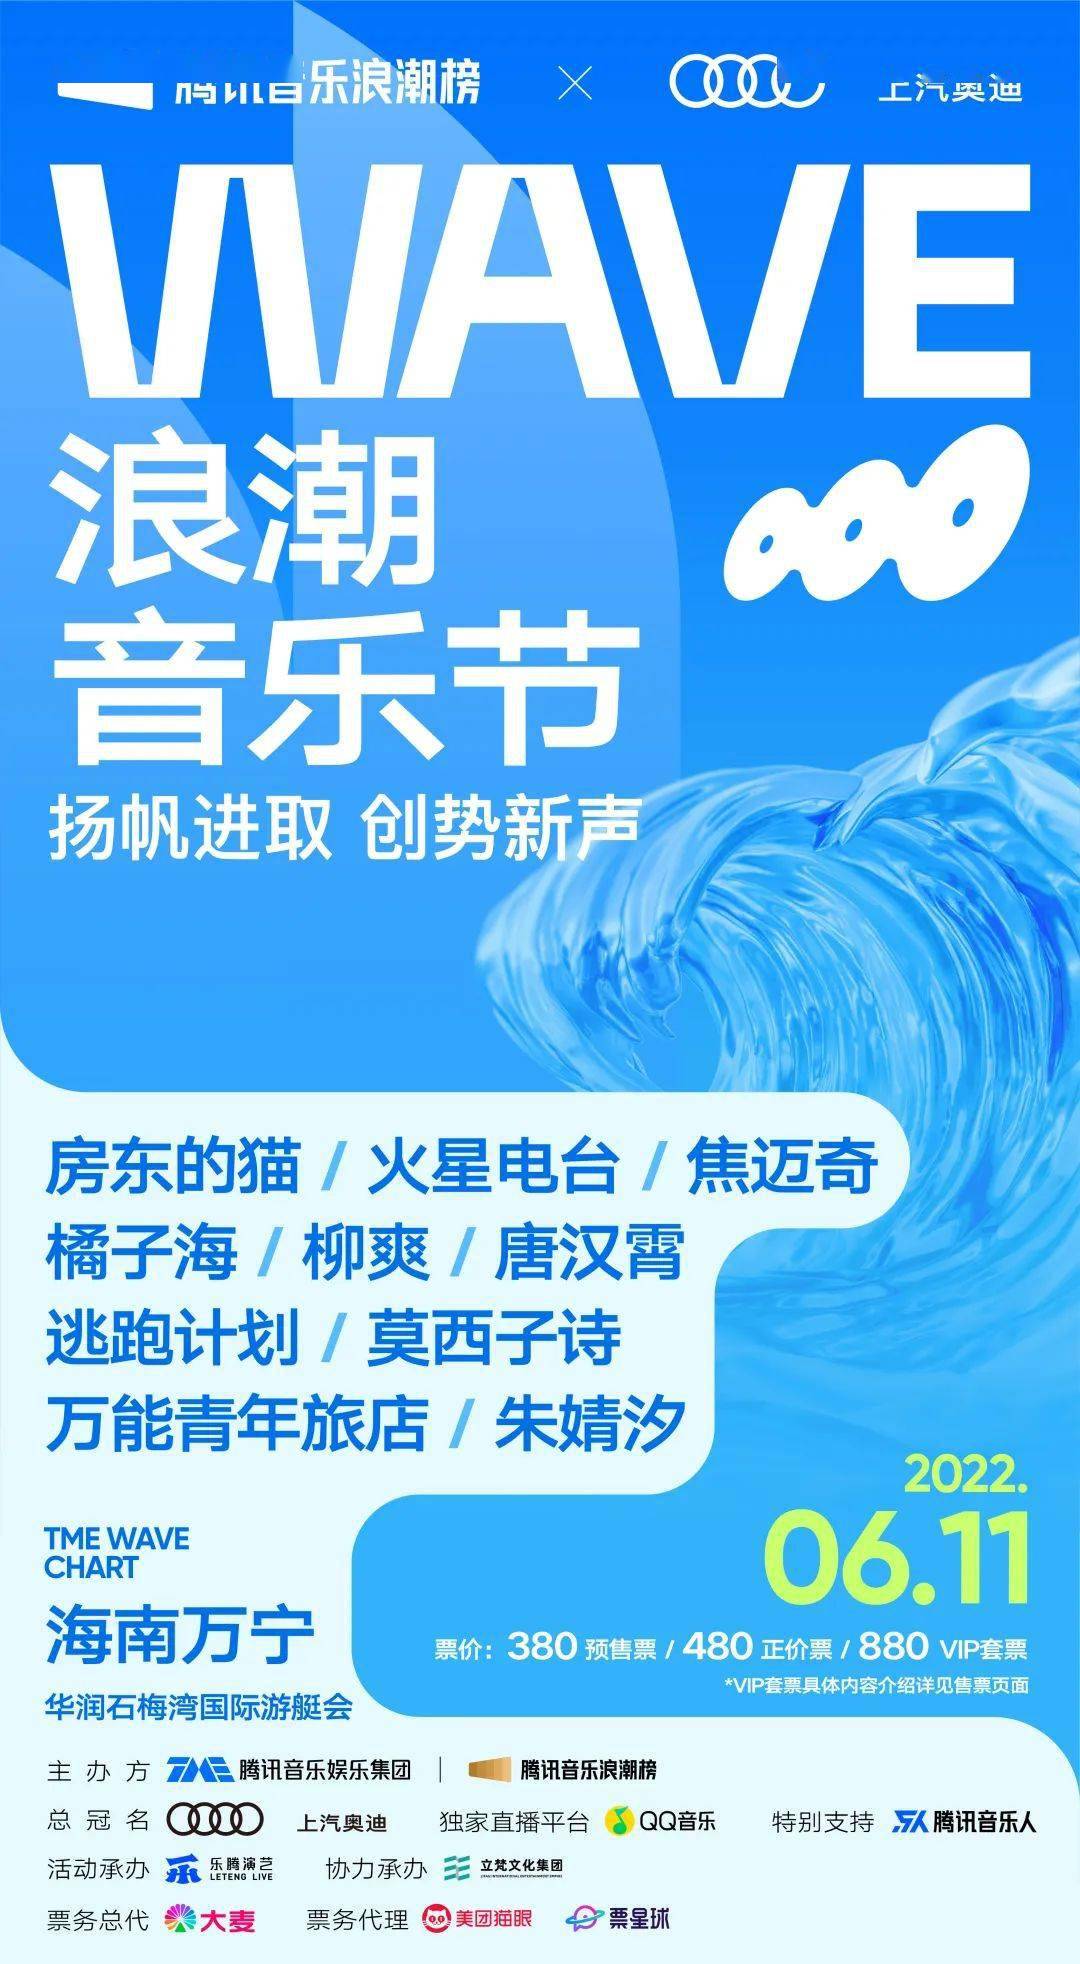 6月11日wave浪潮音乐节,万宁石梅湾热浪来袭~_搜狐汽车_搜狐网